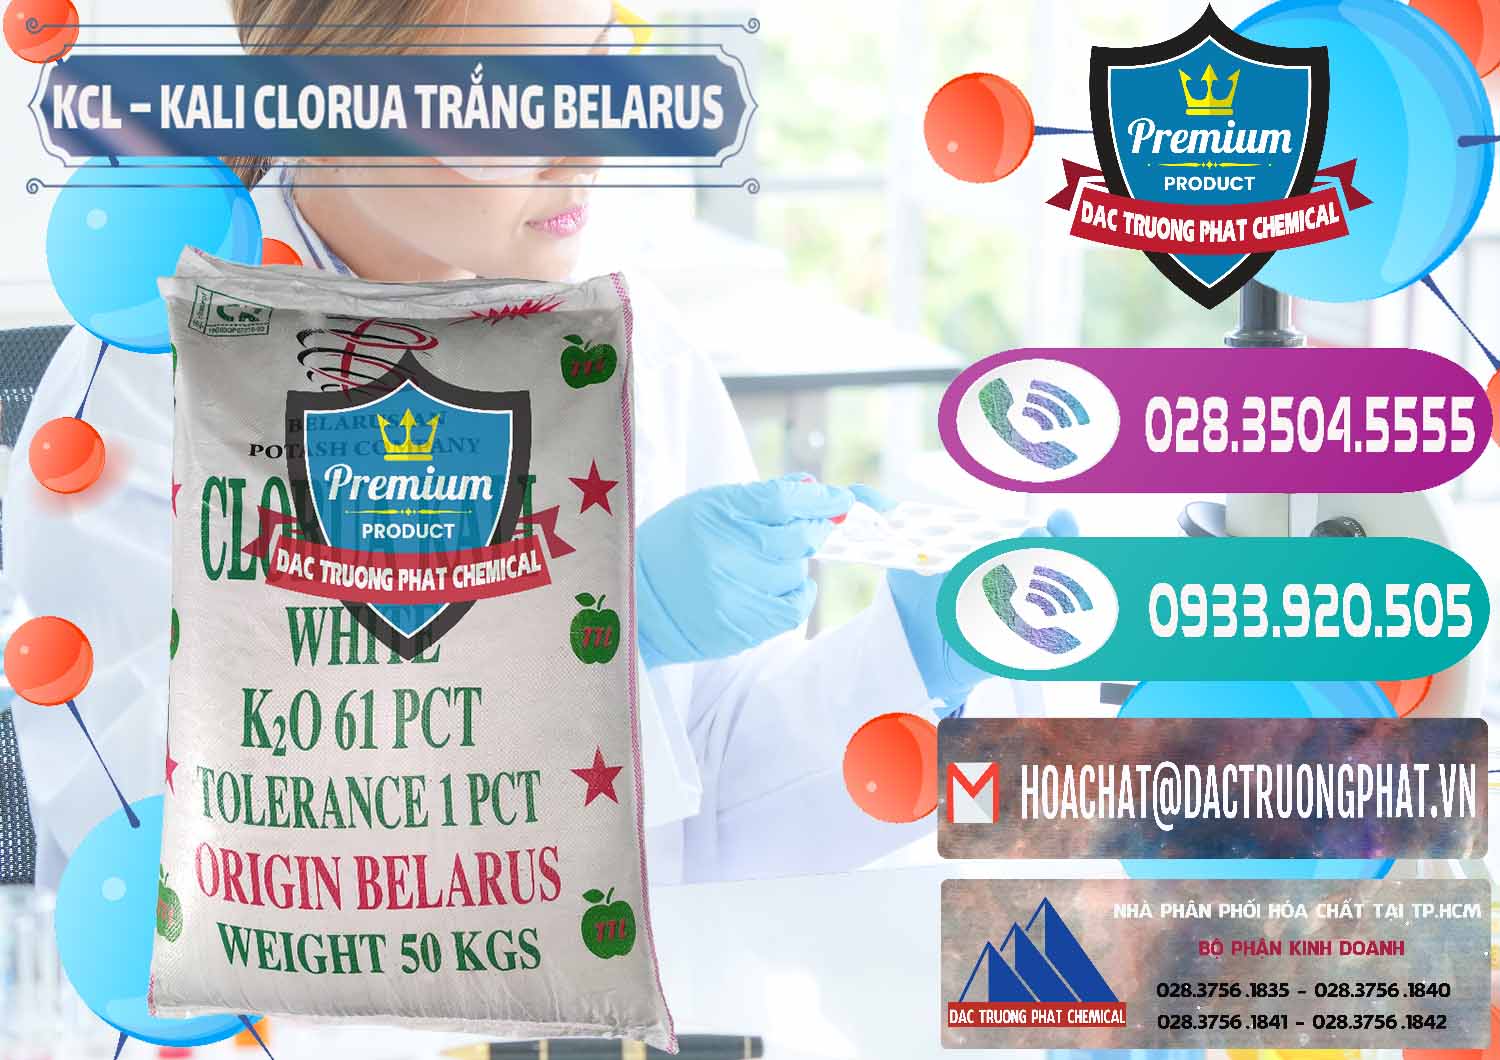 Công ty kinh doanh và bán KCL – Kali Clorua Trắng Belarus - 0085 - Nơi chuyên bán & phân phối hóa chất tại TP.HCM - hoachatxulynuoc.com